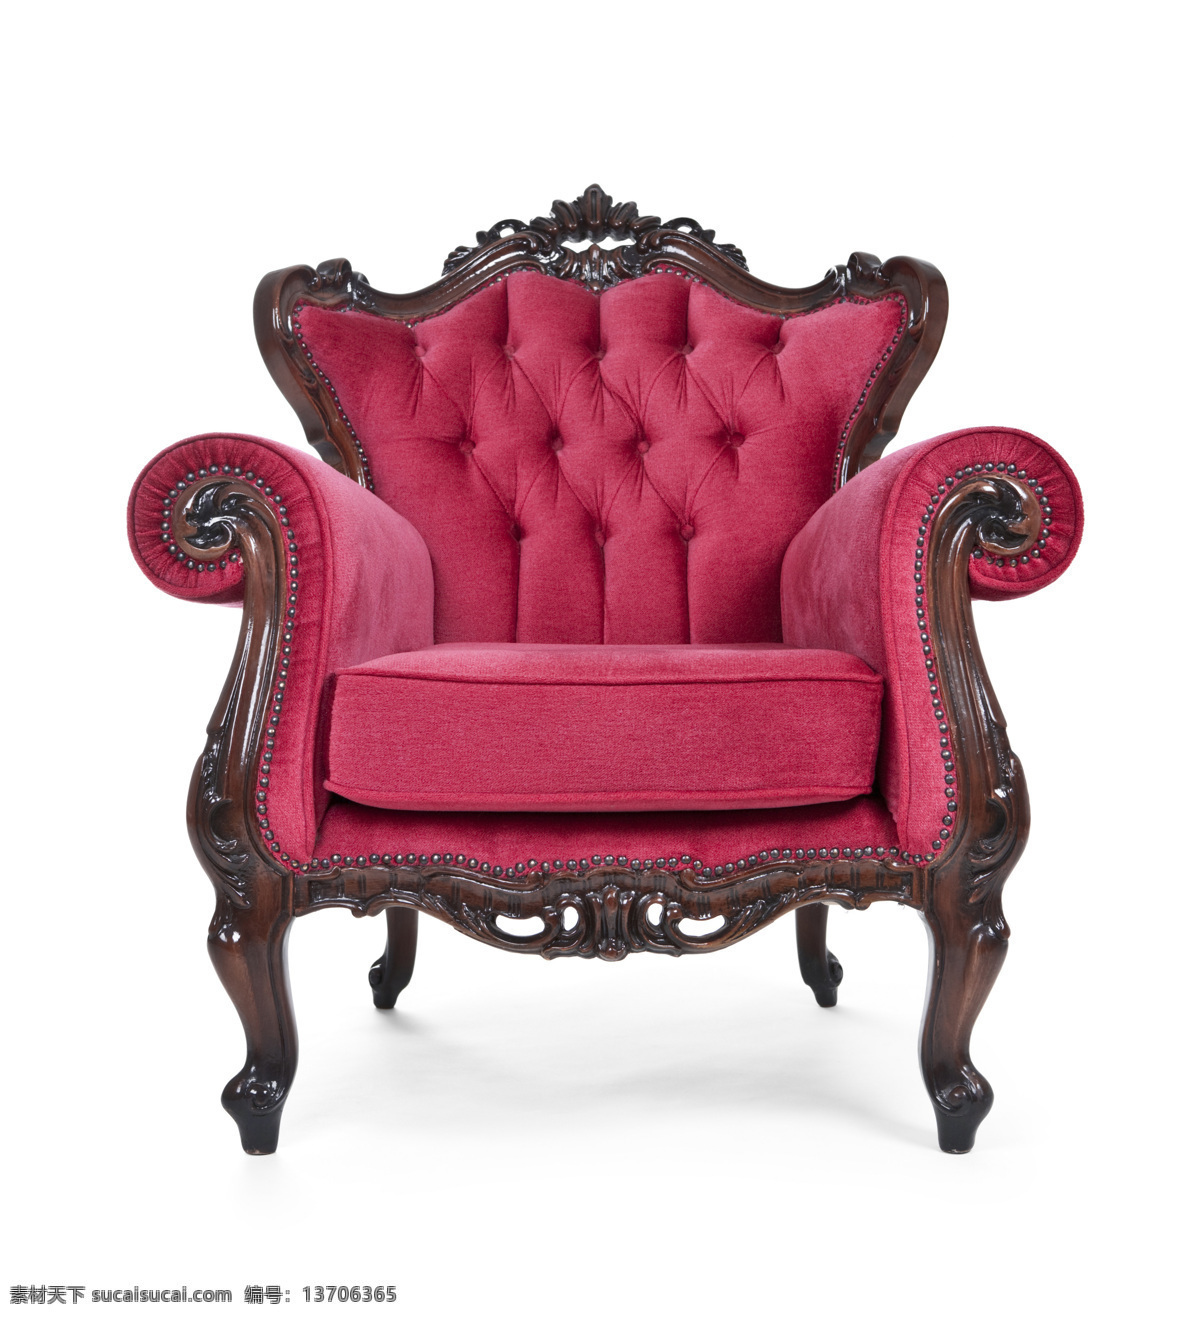 玫瑰红 欧式 椅子 欧式椅子 高清图片 jpg图库 摄影图片 高档椅子 玫瑰红椅子 木椅 家具电器 生活百科